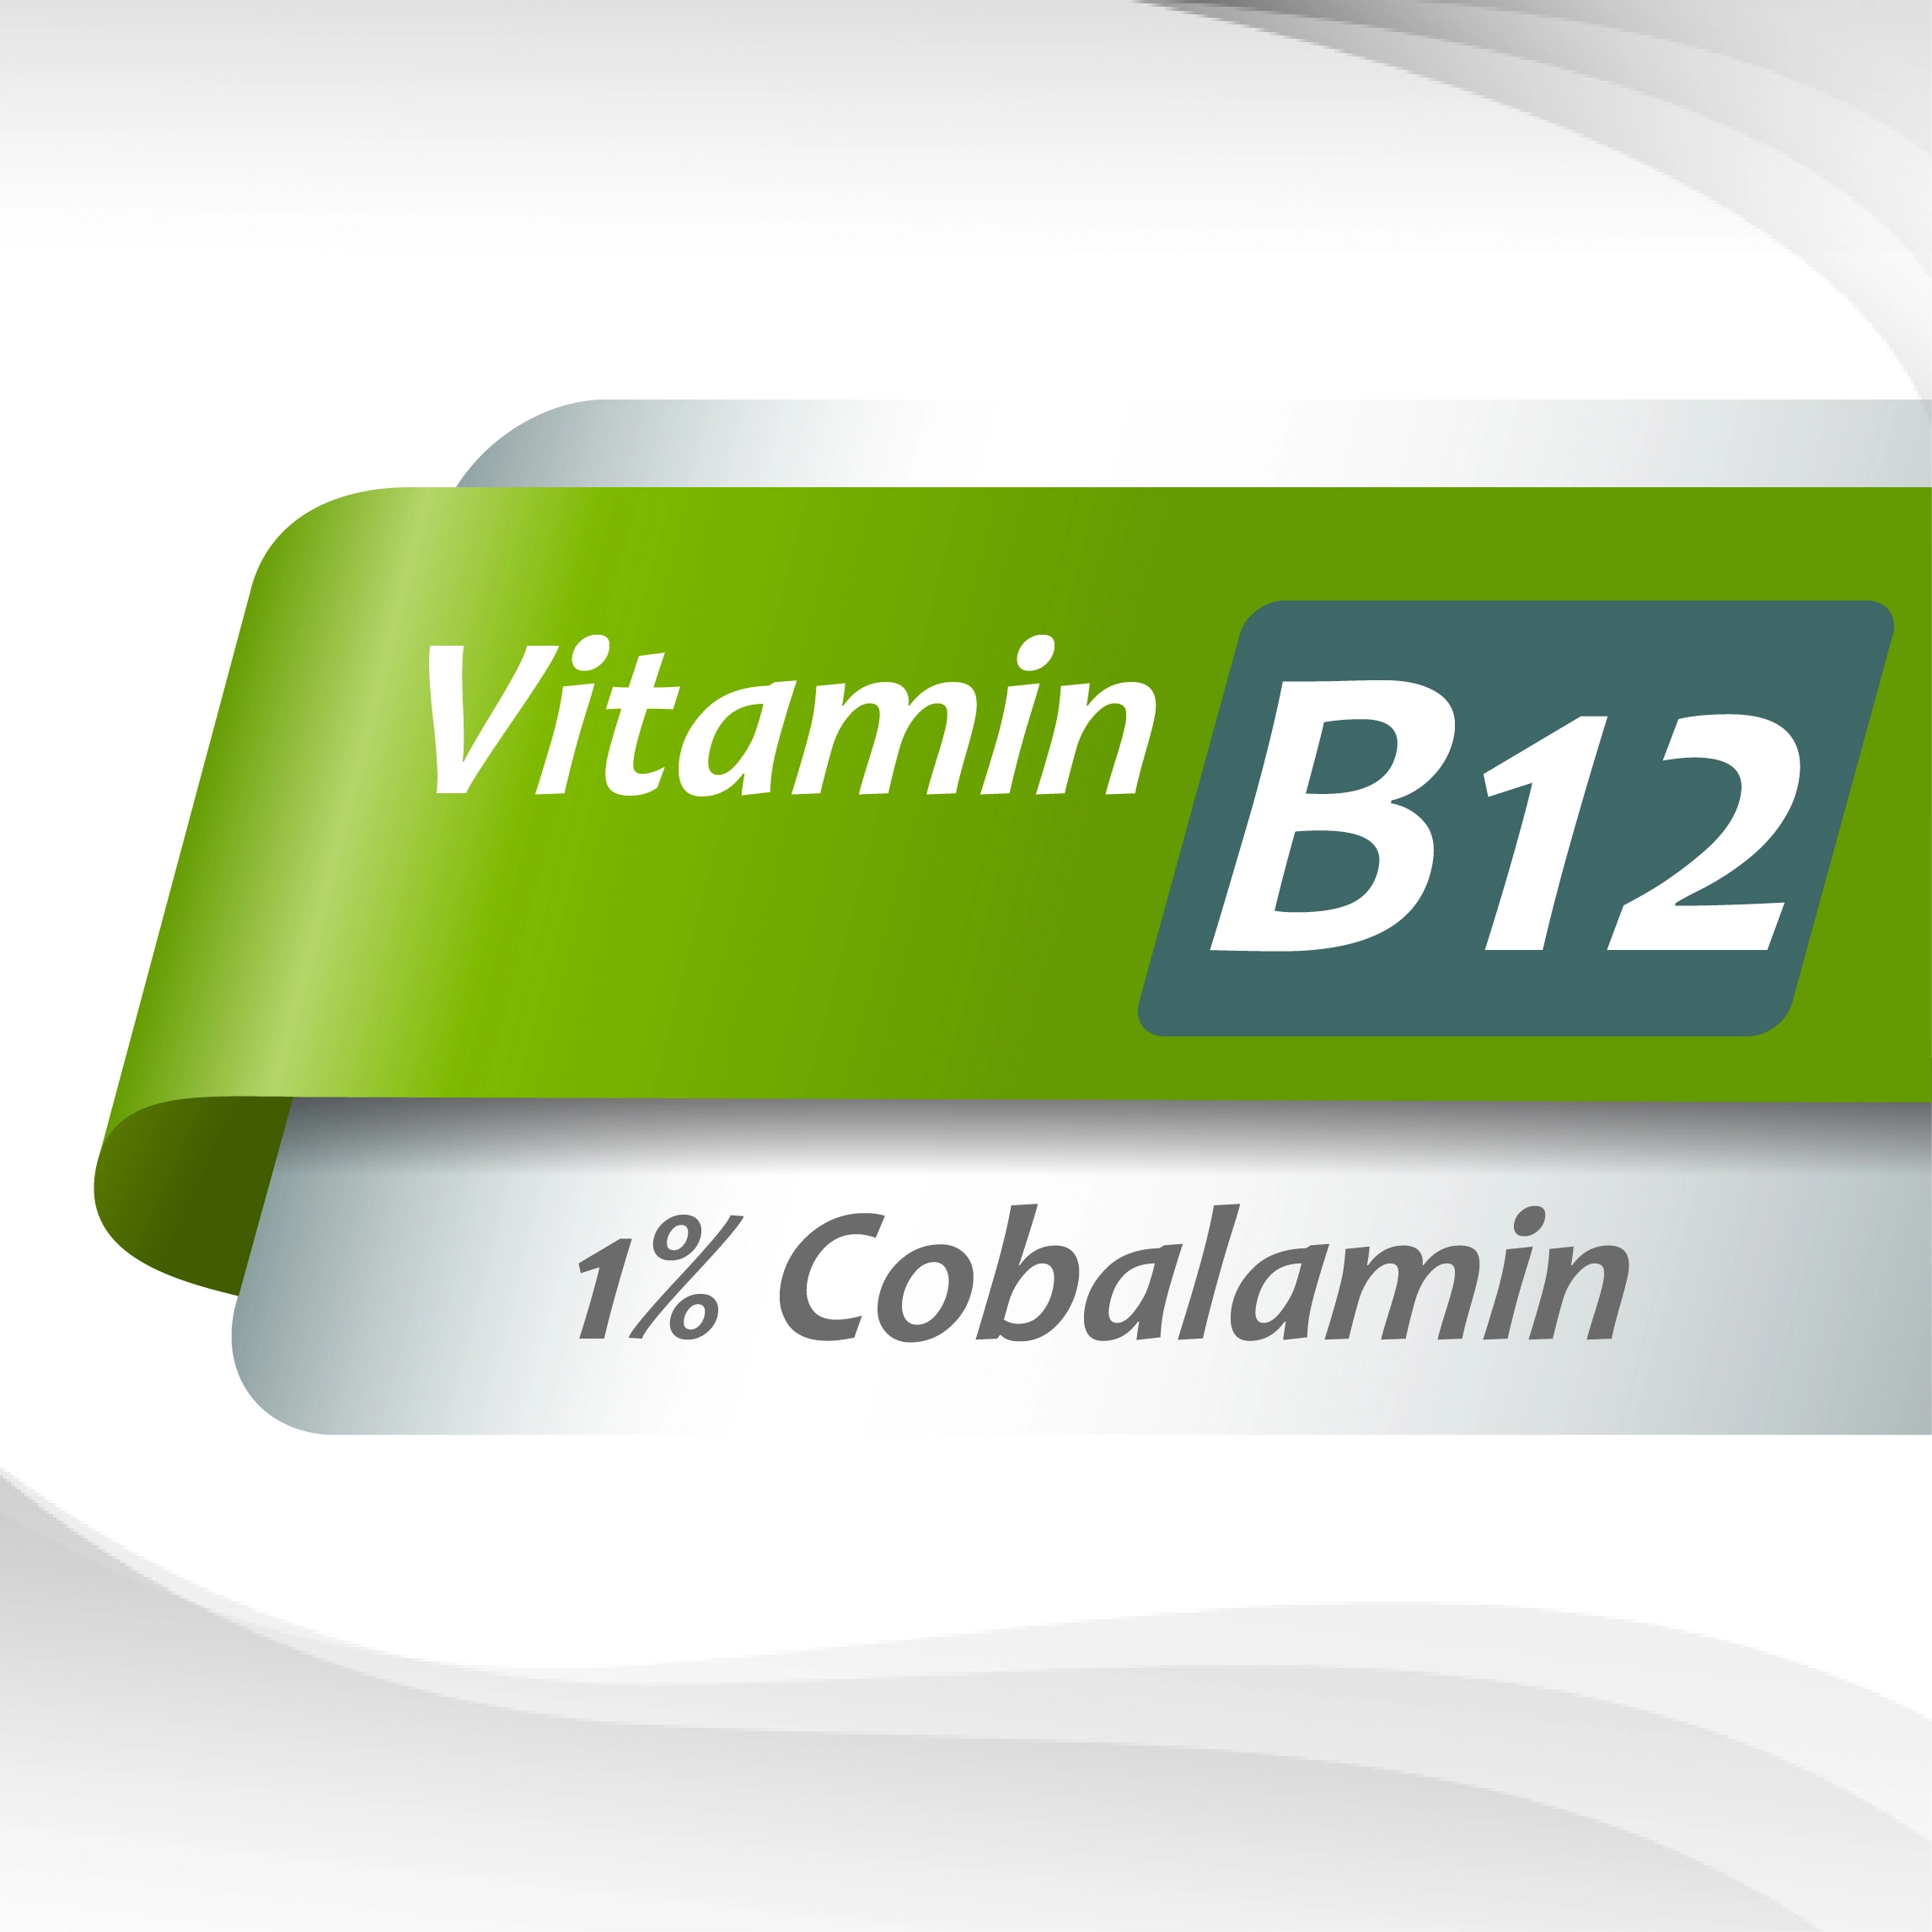 Vitamin-B12_1%Cobalamin